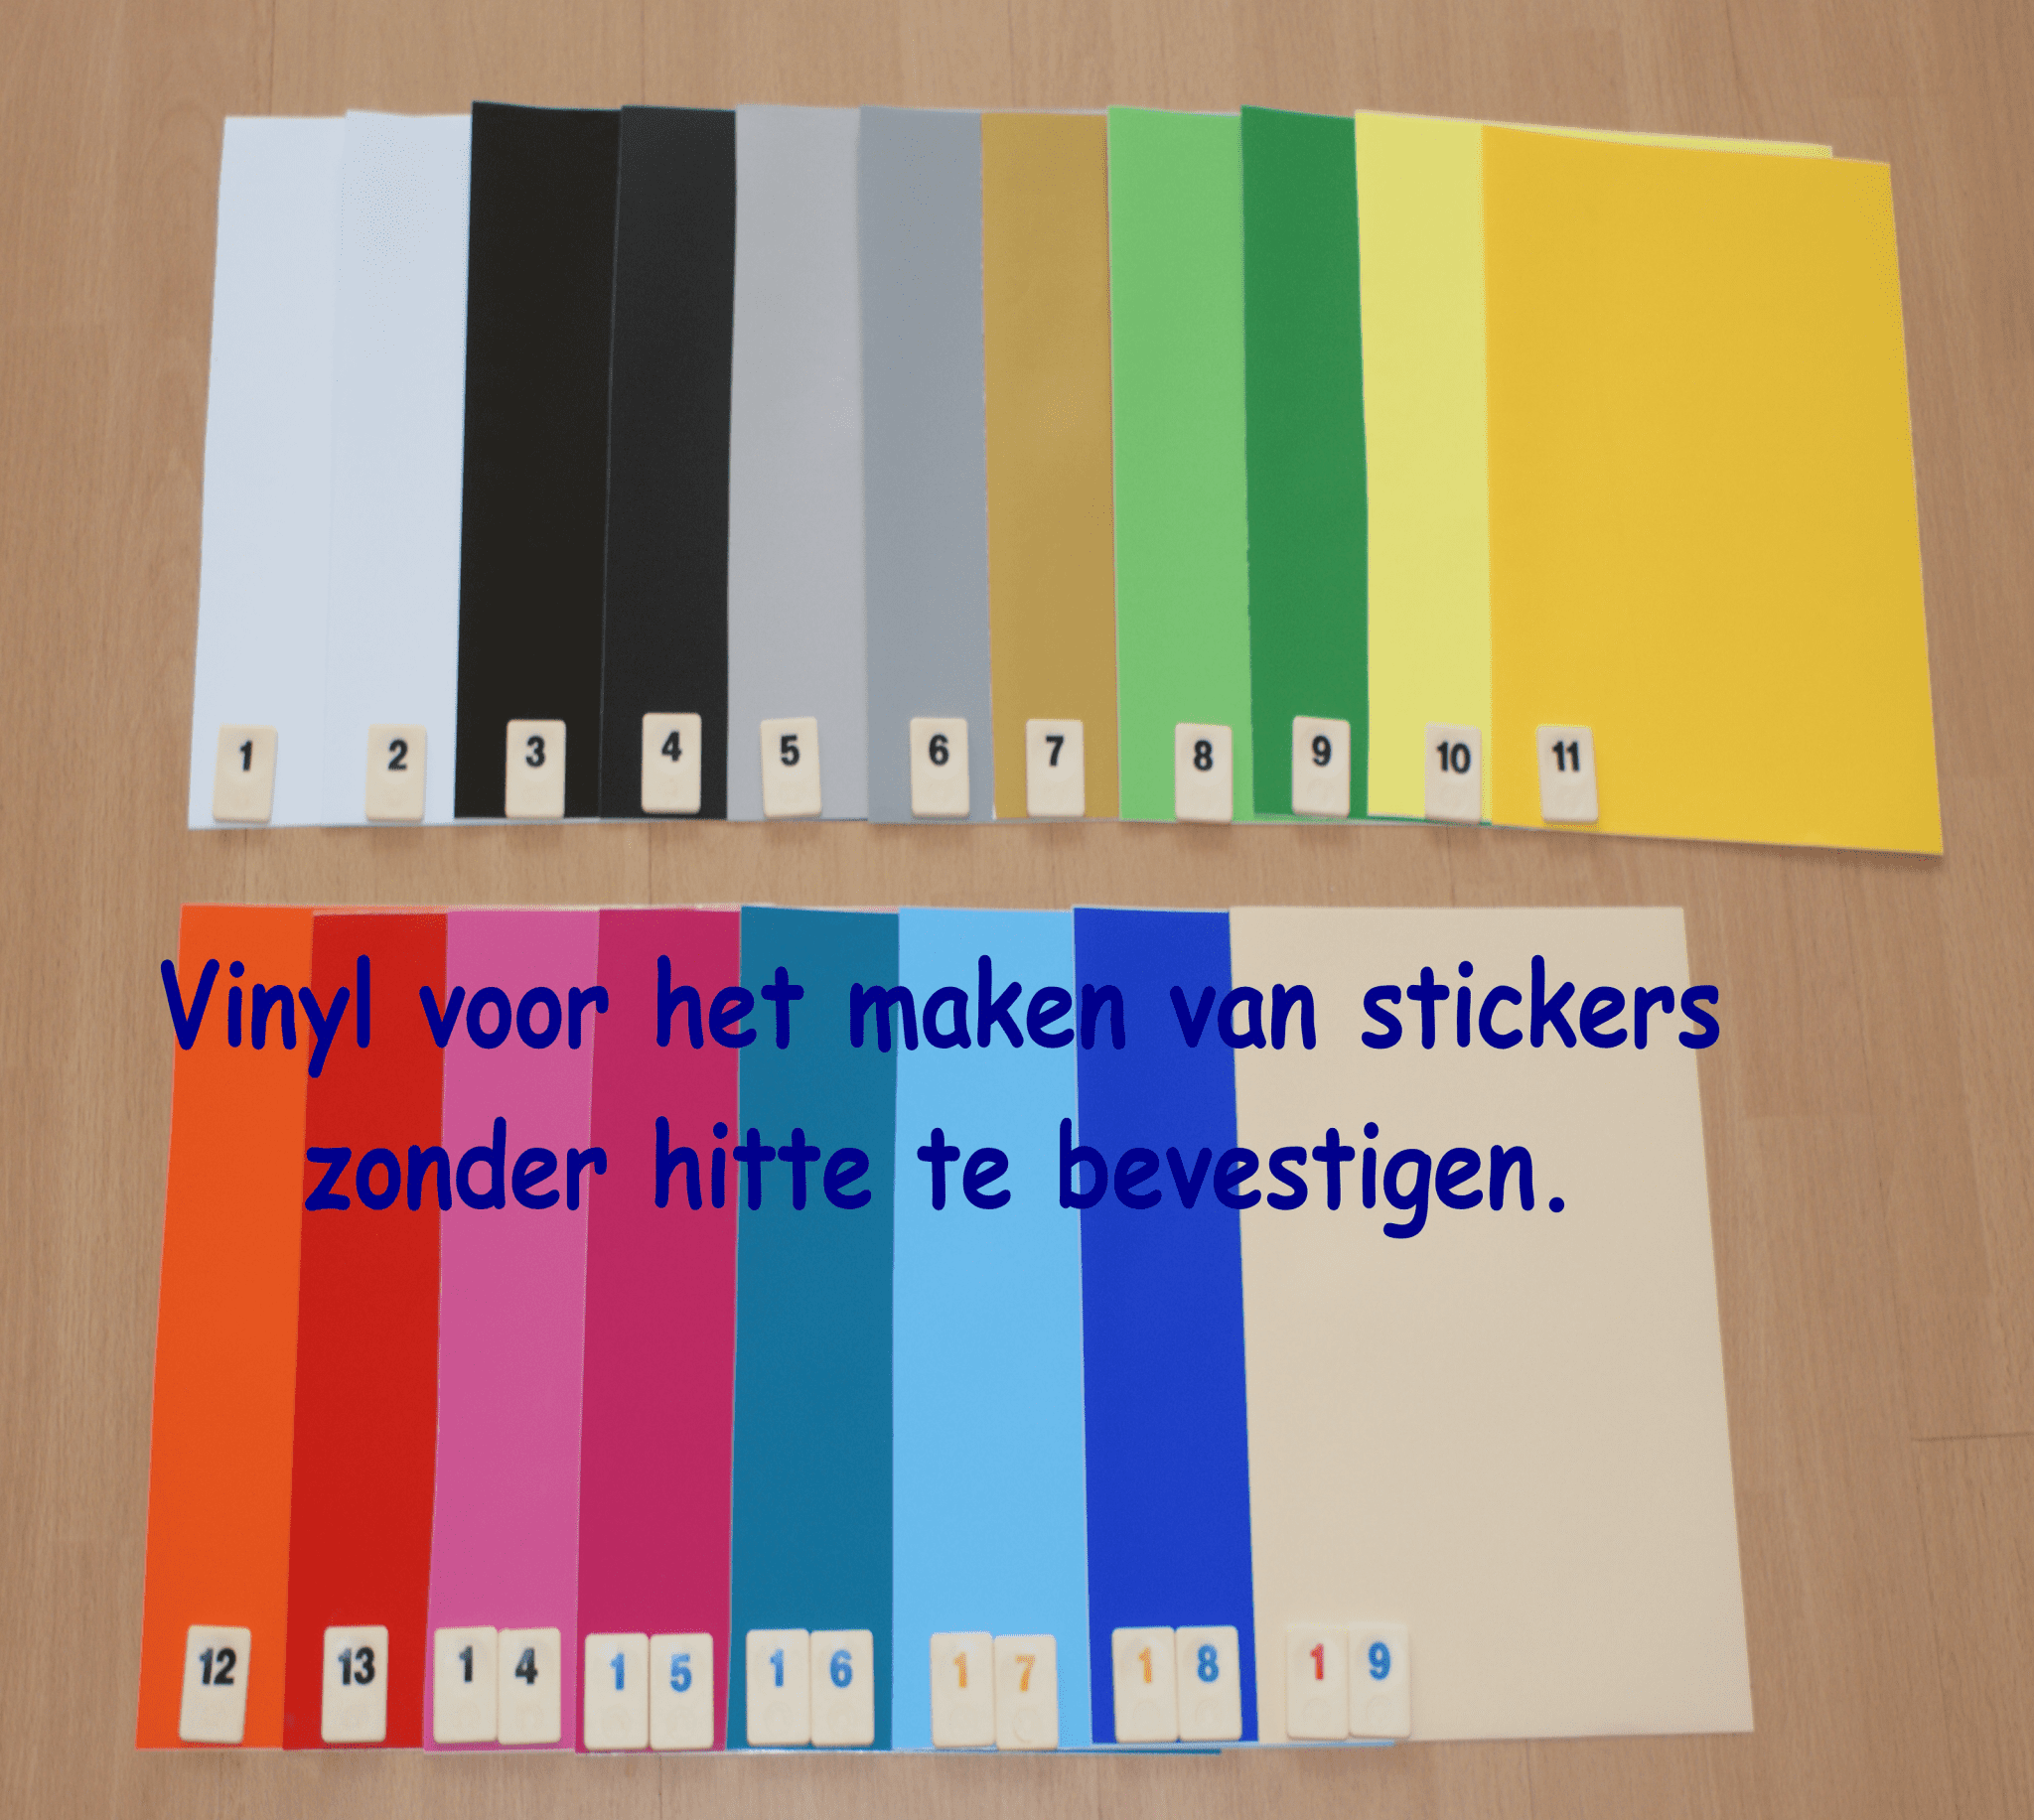 Vinyl Folie 19 VOORDEEL PK0XRIVINYL19 voor maar €11,99 Cityplotter Zaandam – Cityplotter